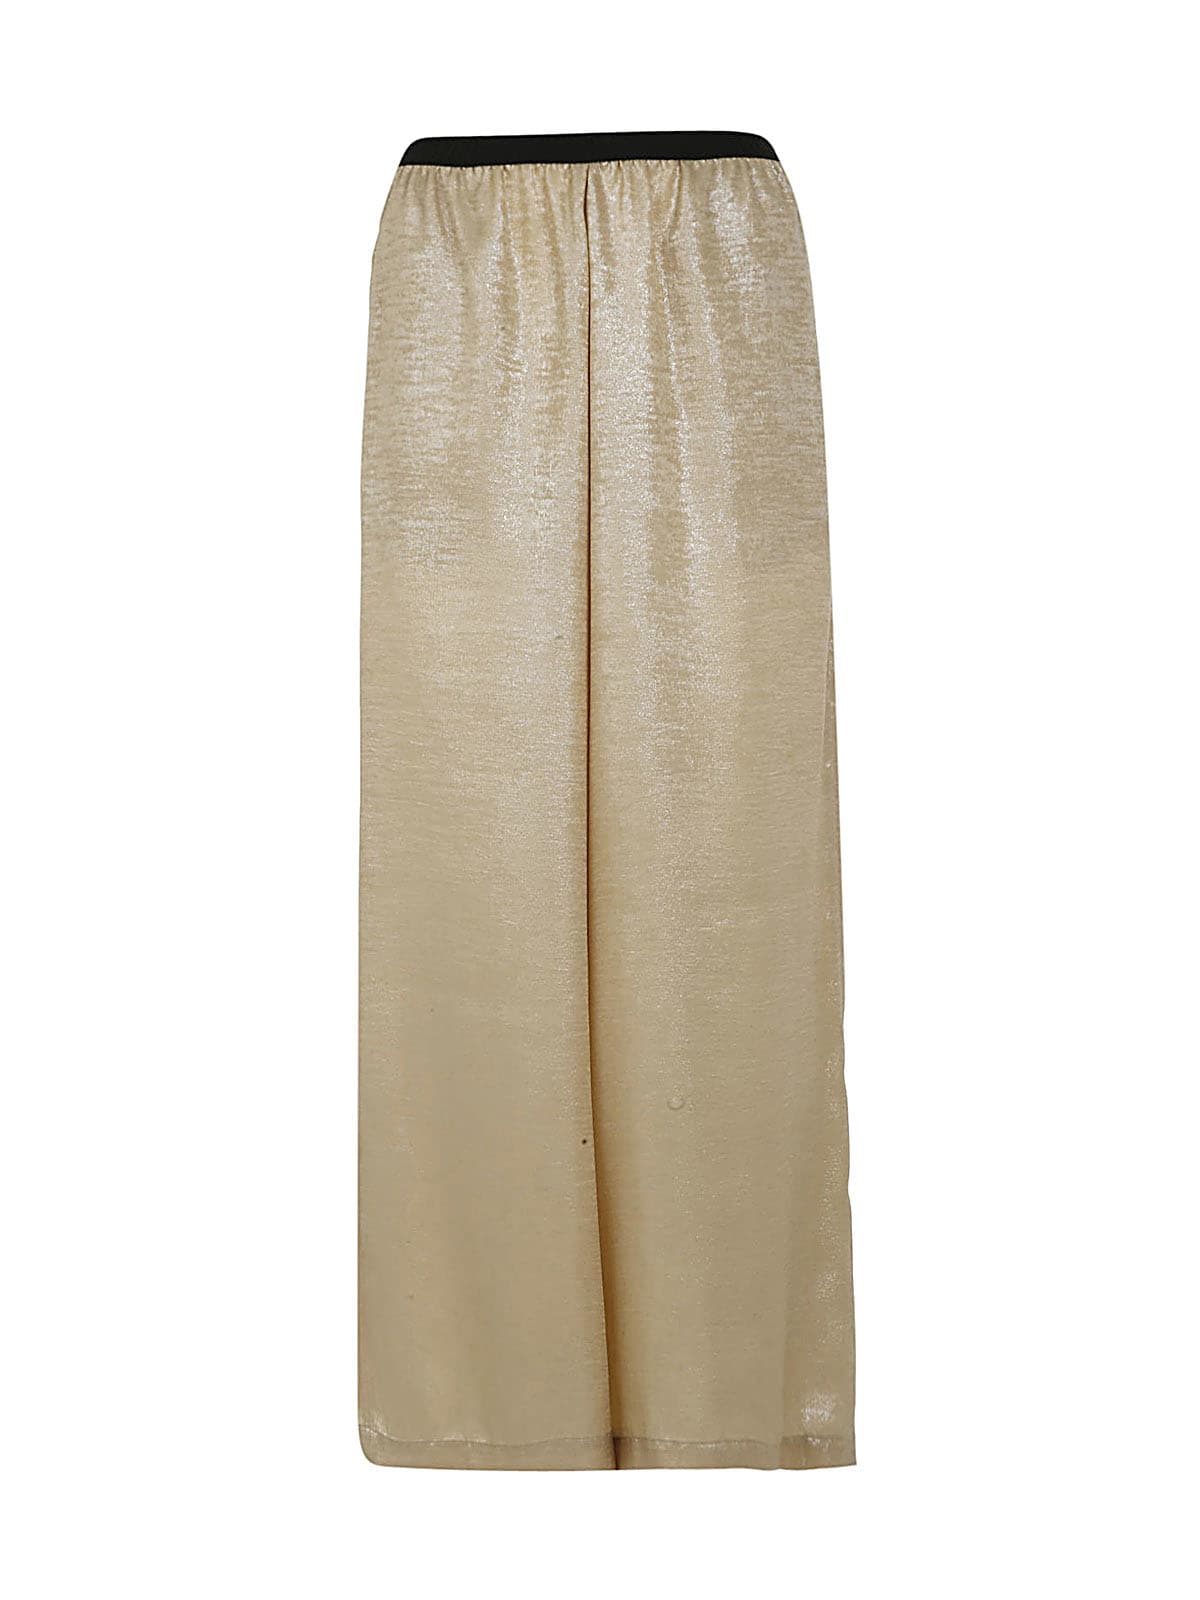 Antonio Marras Elastic Gold Fabric Trousers